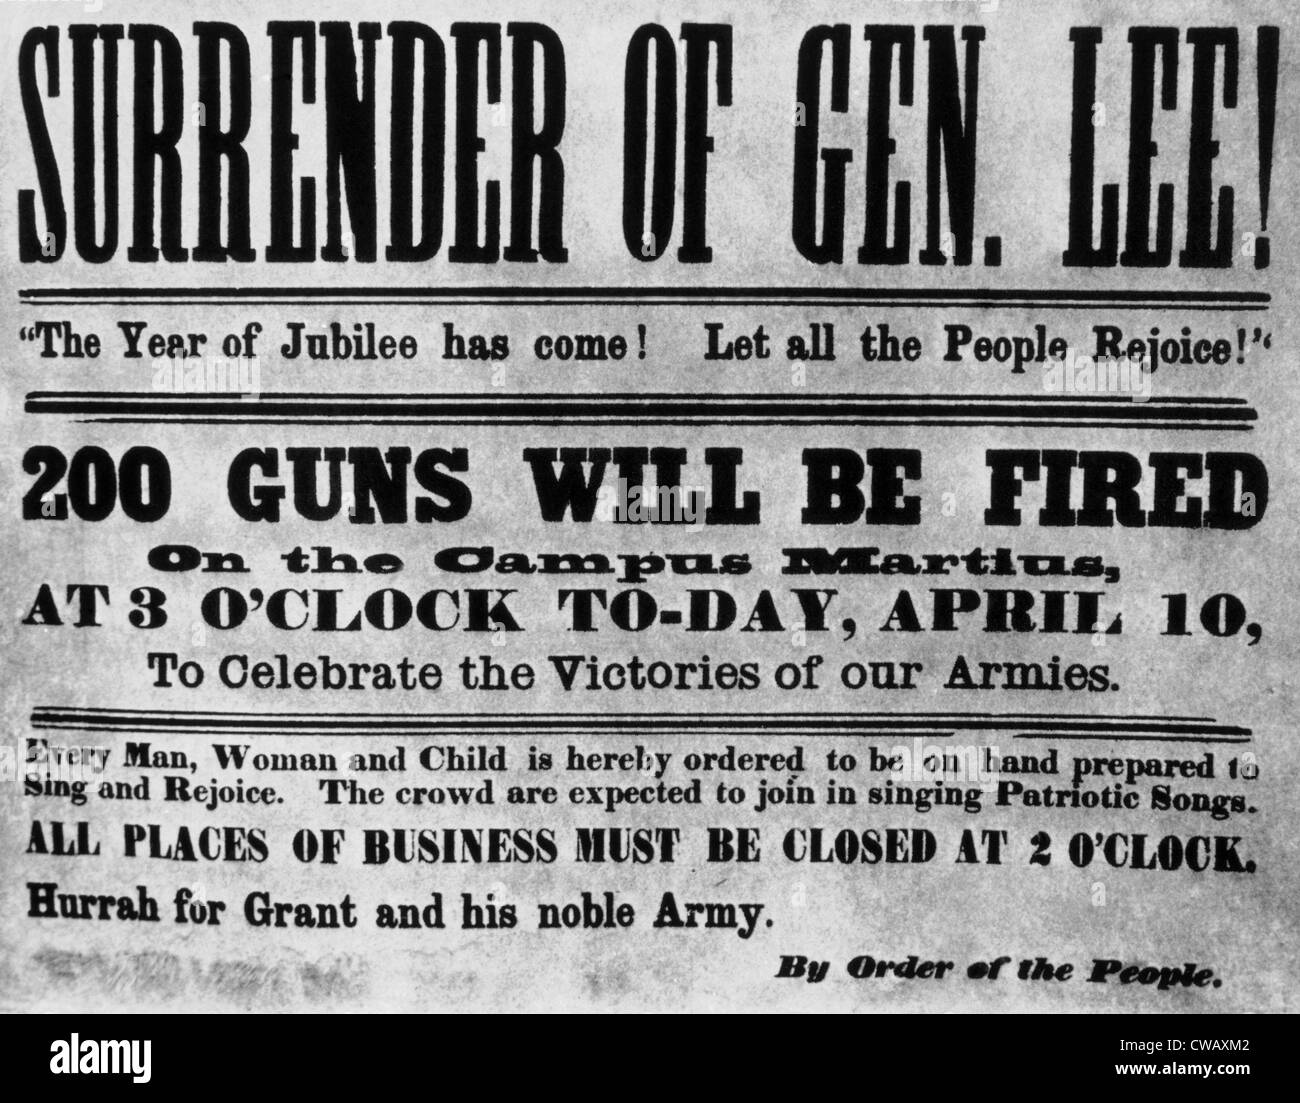 Bekanntgabe der Kapitulation von General Lee am Appomattox Gerichtsgebäude in Virginia endet der Bürgerkrieg am 9. April 1865 Plakat Stockfoto